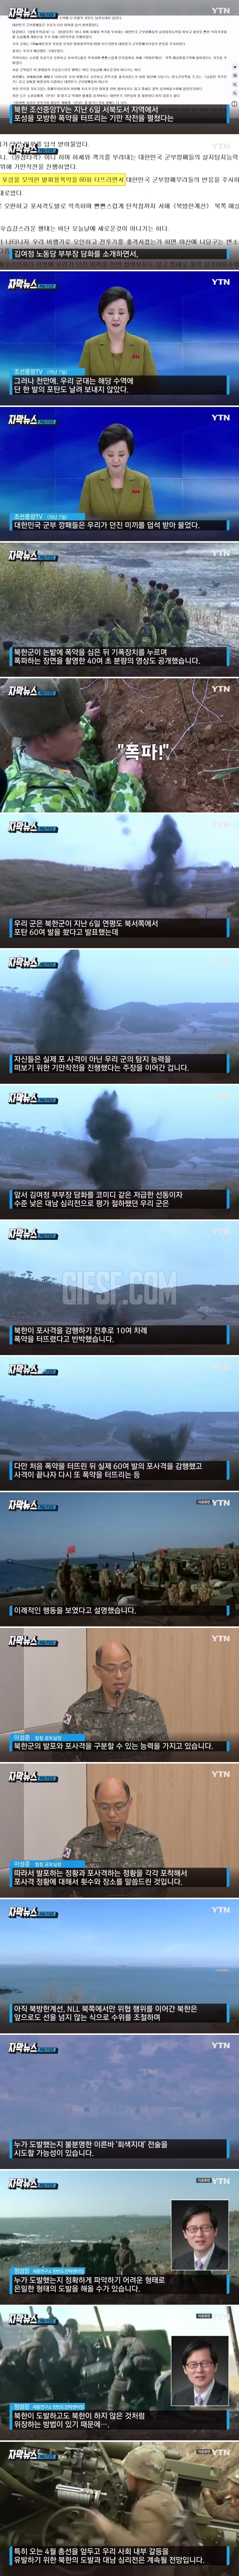 남한, 속아 넘어가 .北이 공개한 영상.jpg